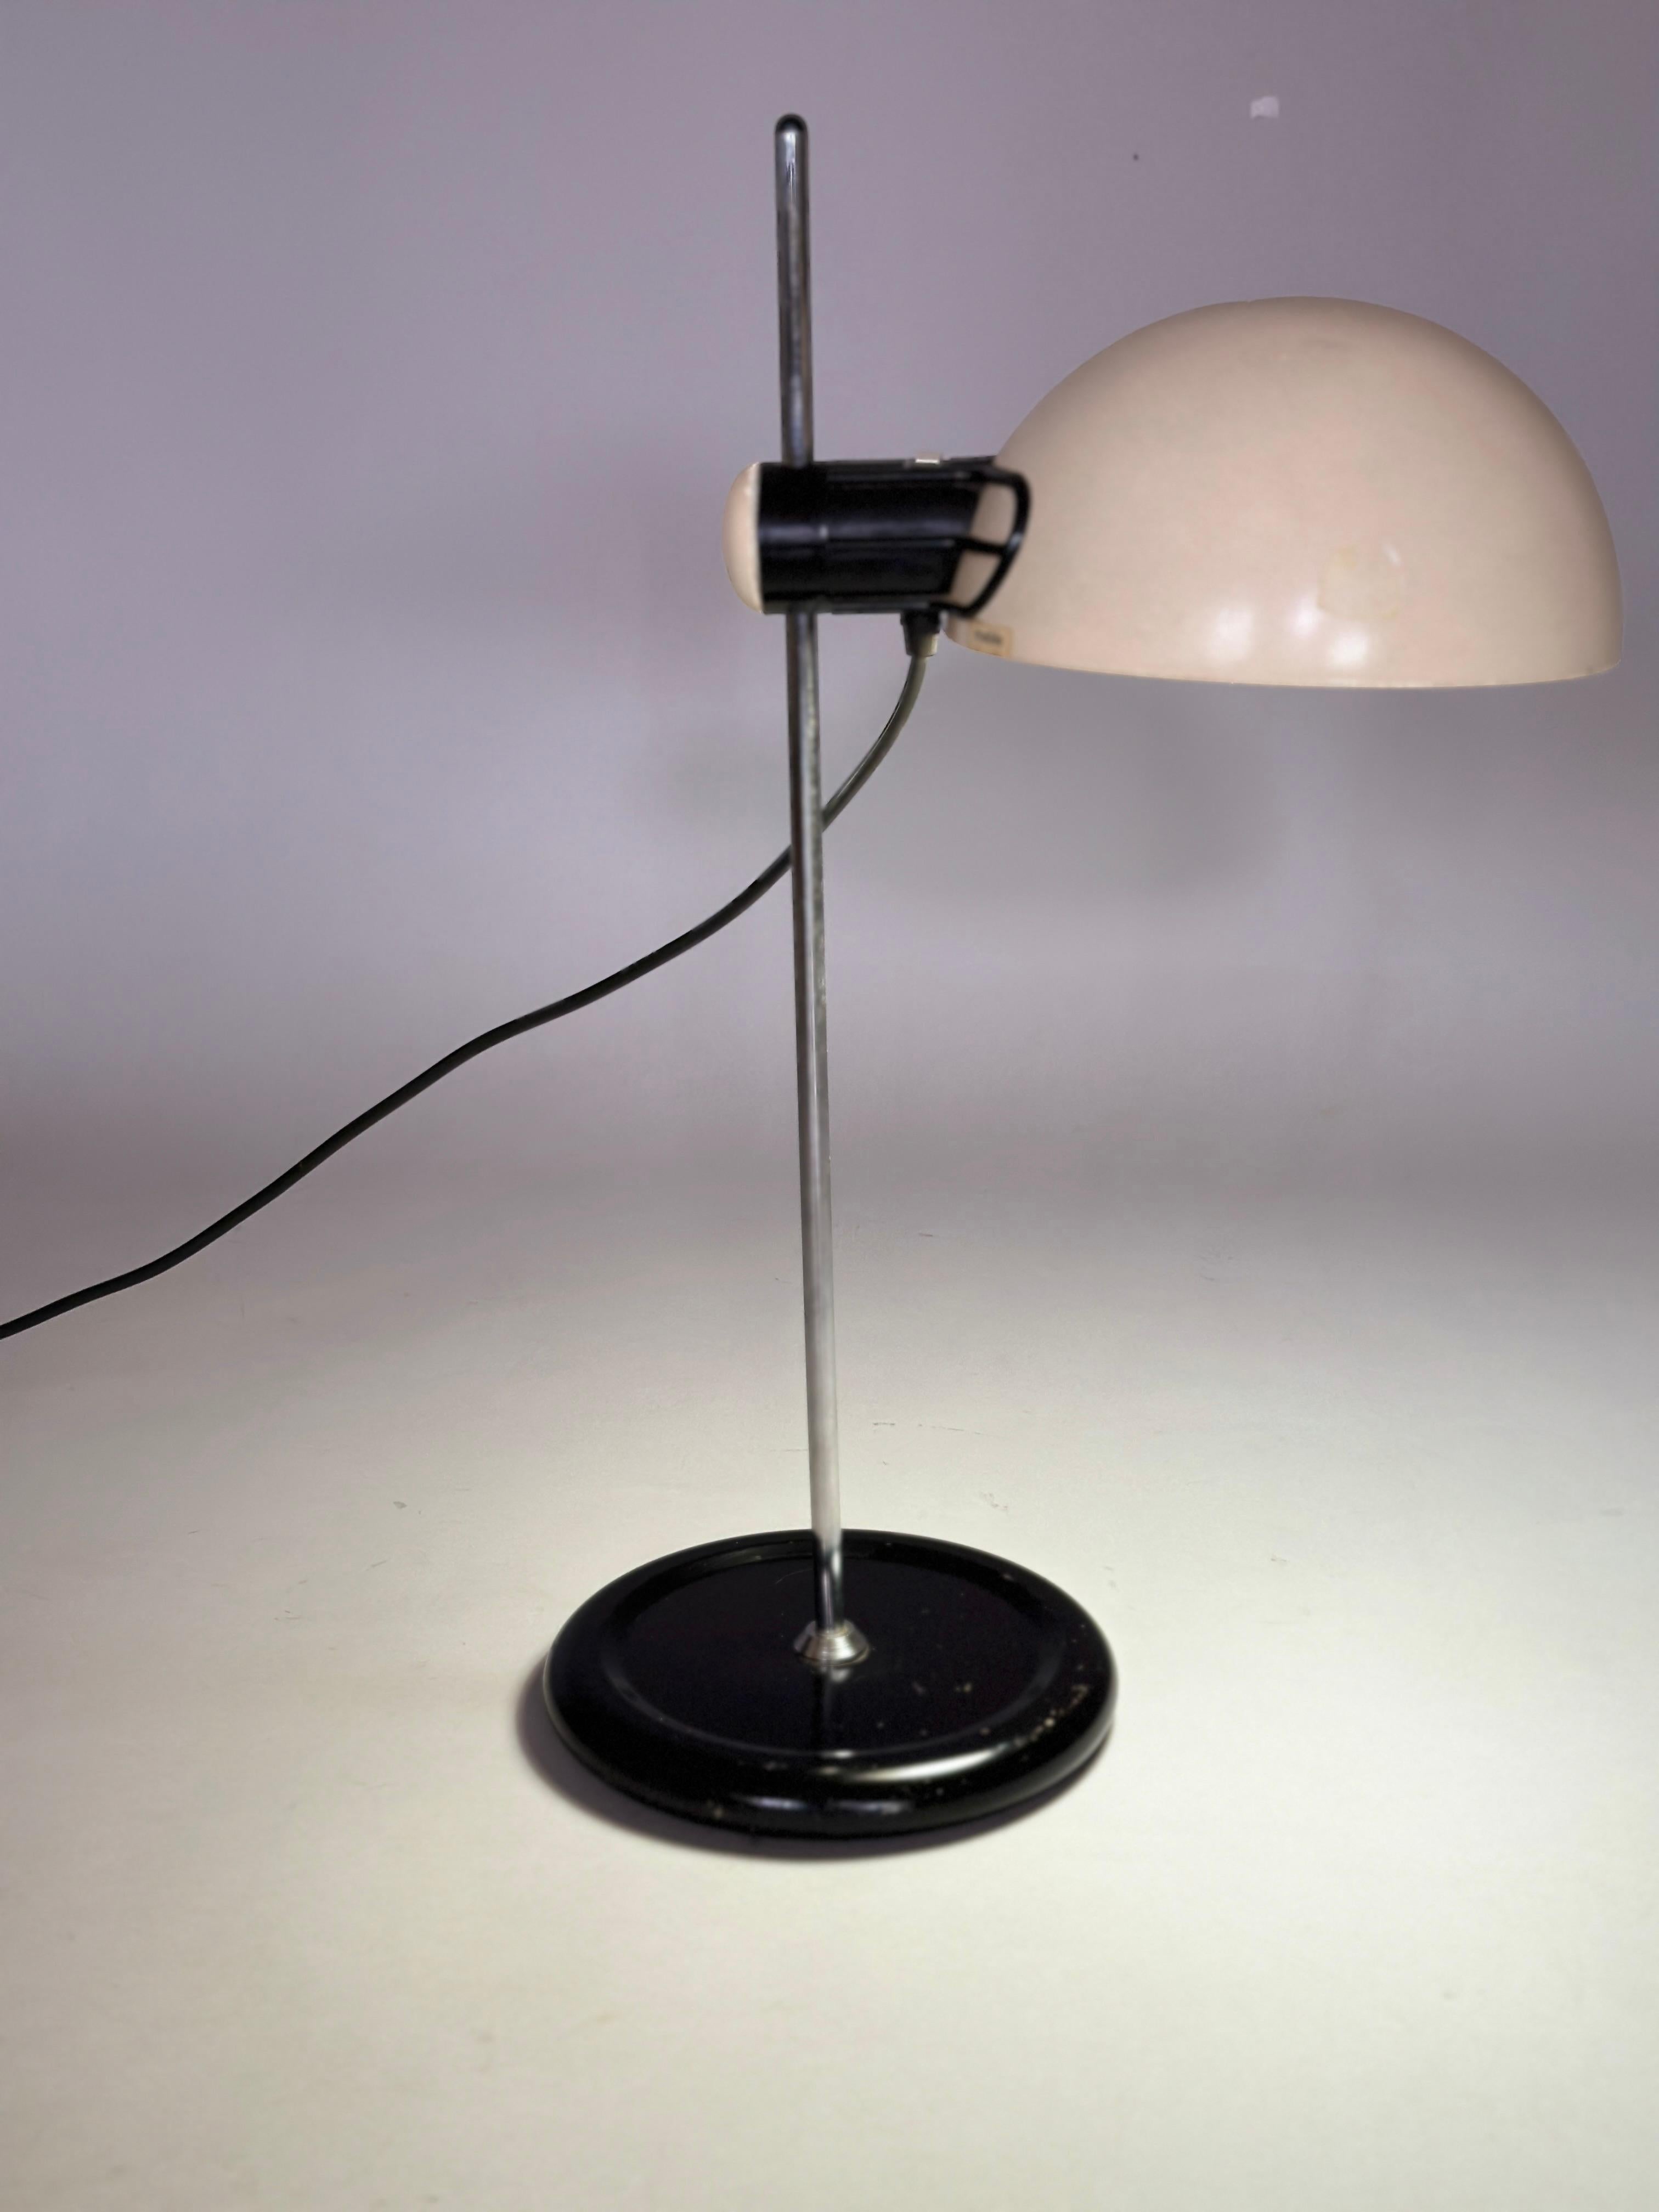 Guzzini table lamp Italy 1970s